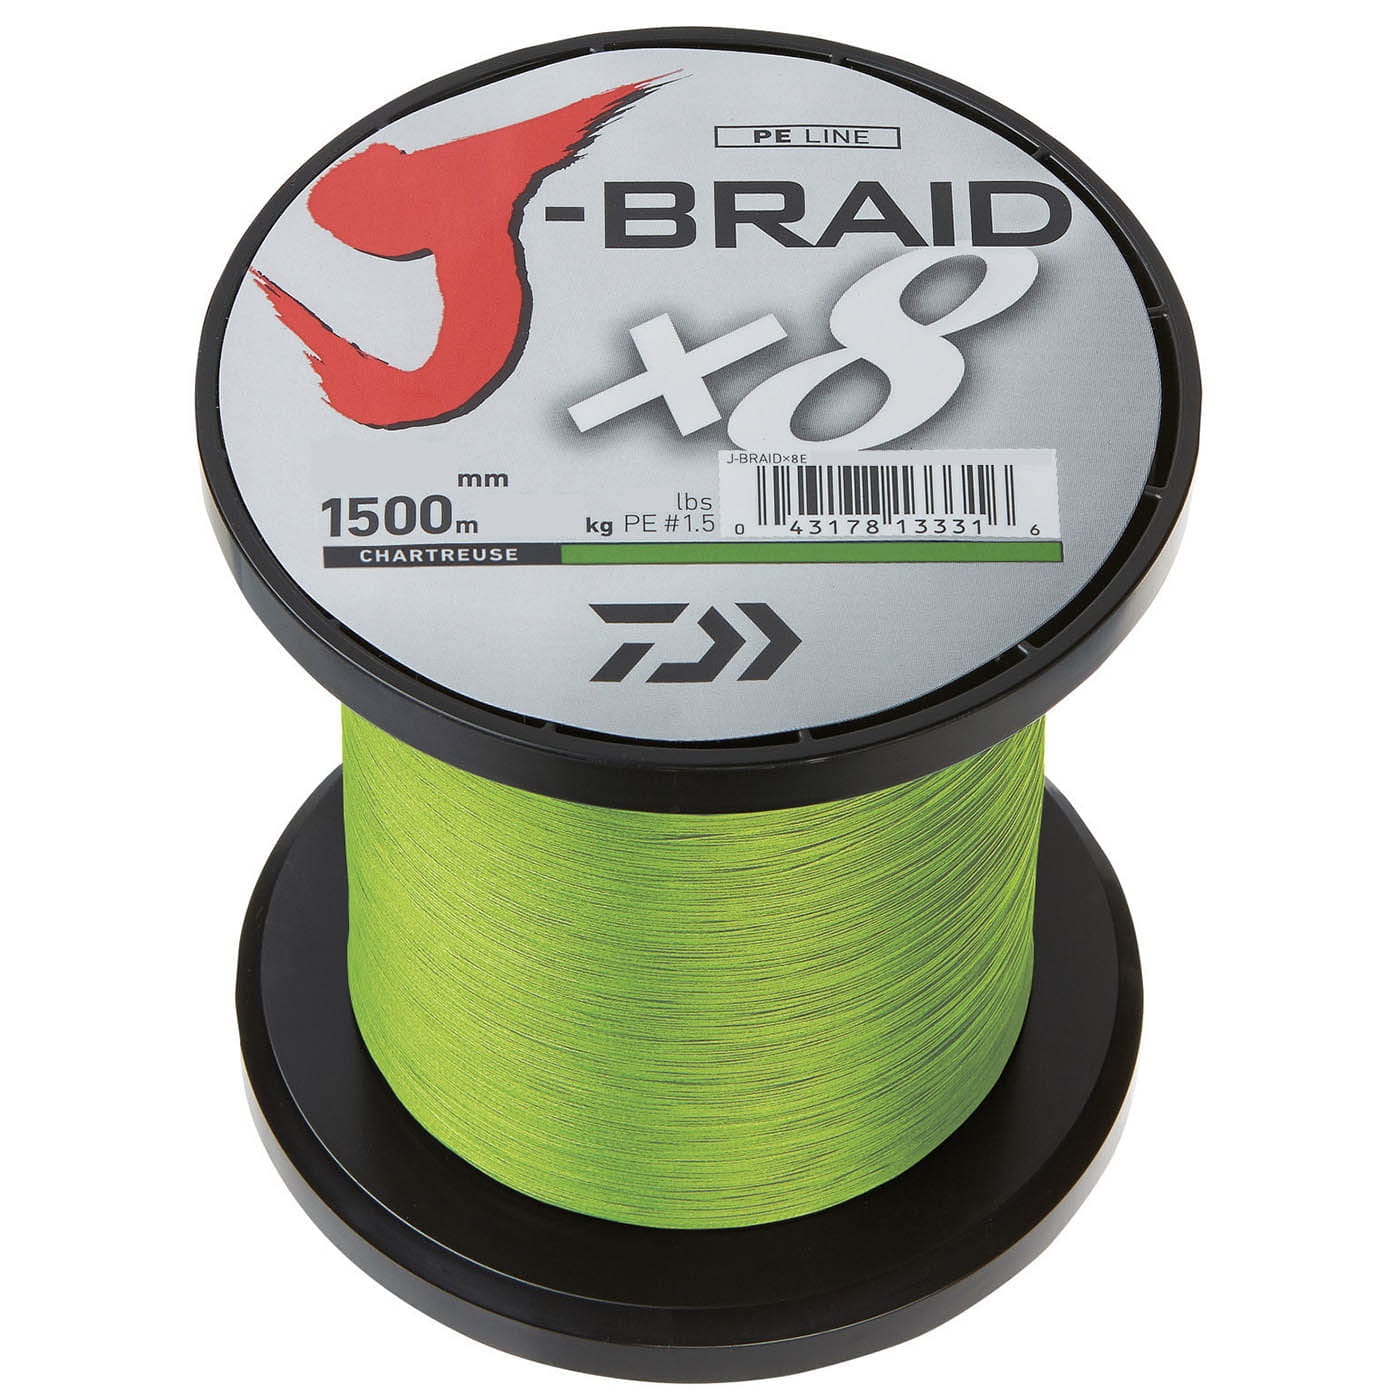 Daiwa J Braid X8 Braided Fishing Line Chartreuse 300m